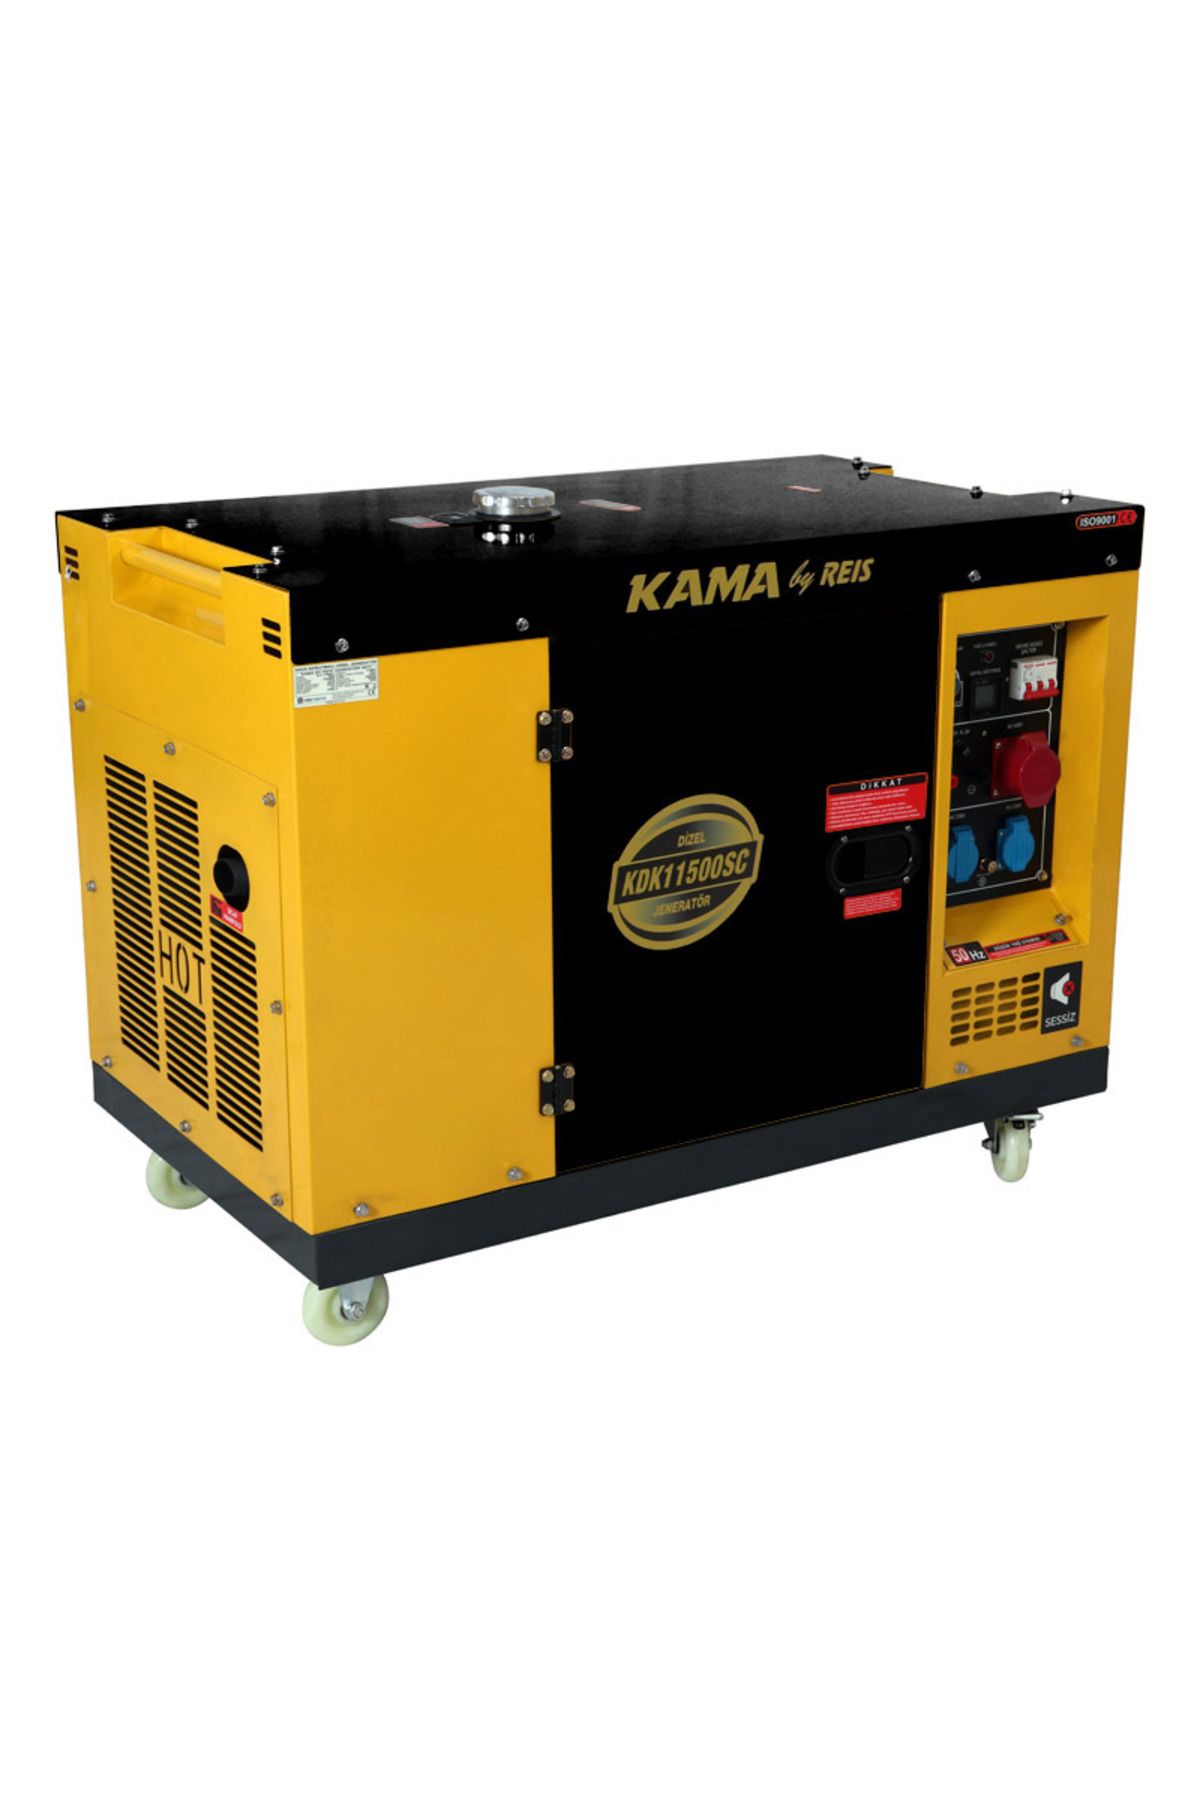 Kama By Reis Kama KDK11500SC Dizel Jeneratör 8.8kW